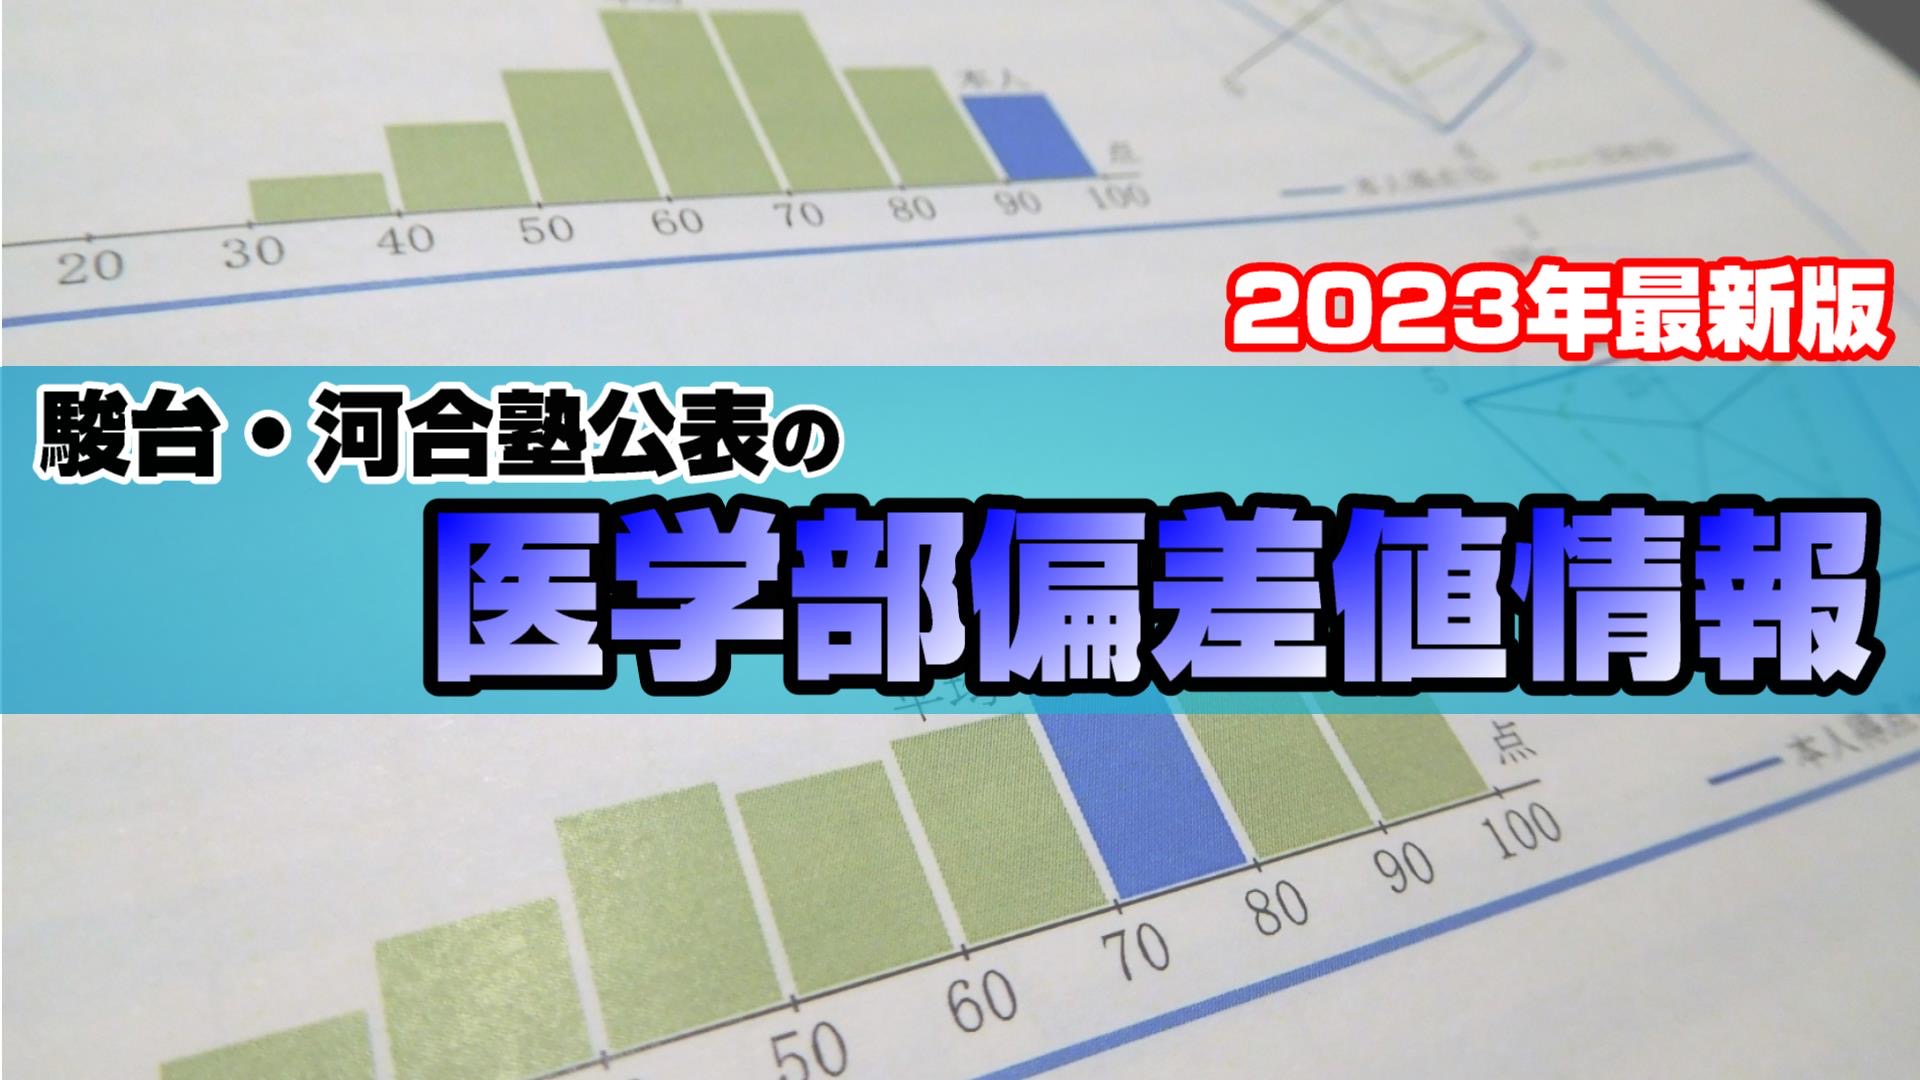 【2022年最新版】駿台・河合塾公表の医学部偏差値情報